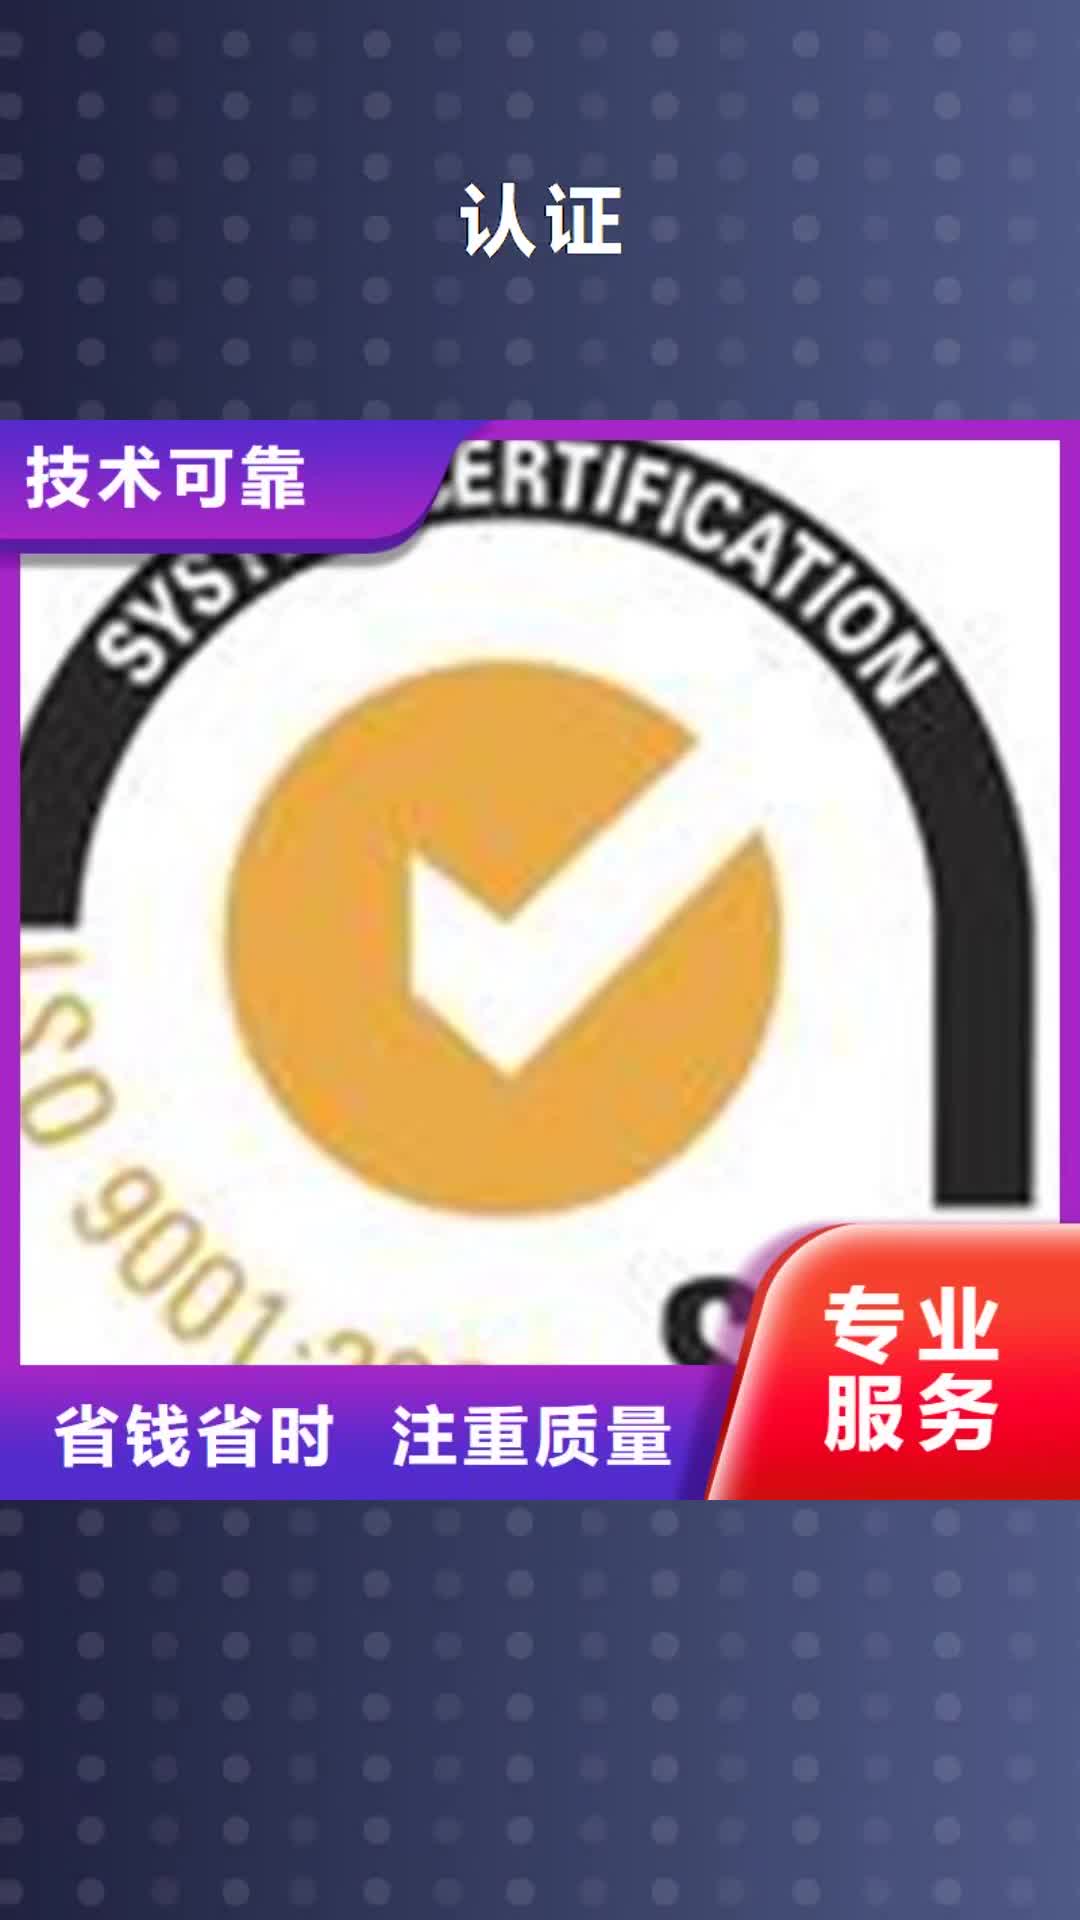 石家庄【认证】-ISO9000认证专业服务